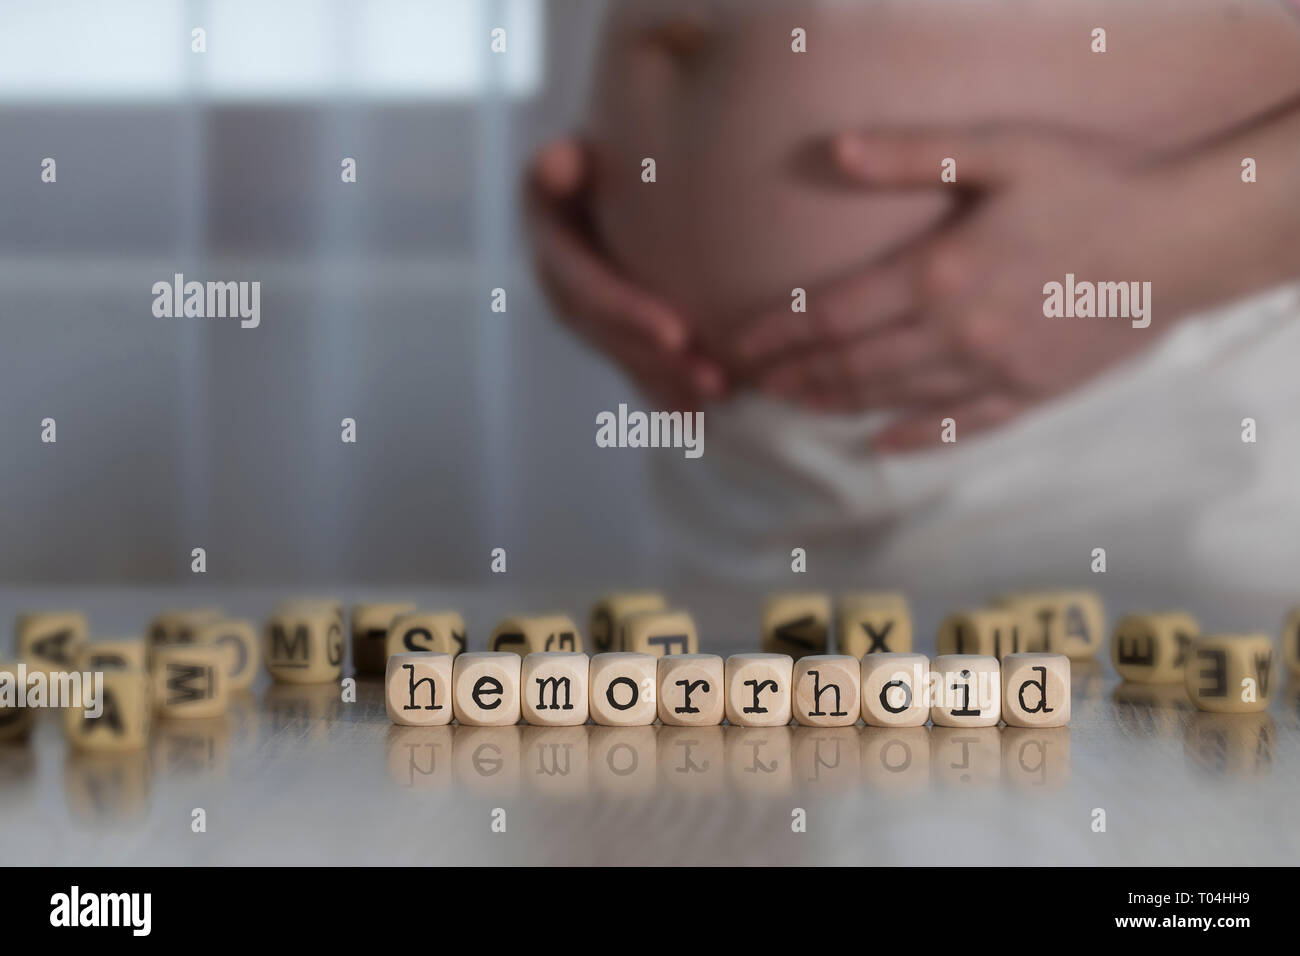 Hémorroïdes mot composé de lettres en bois. Femme enceinte à l'arrière-plan Banque D'Images